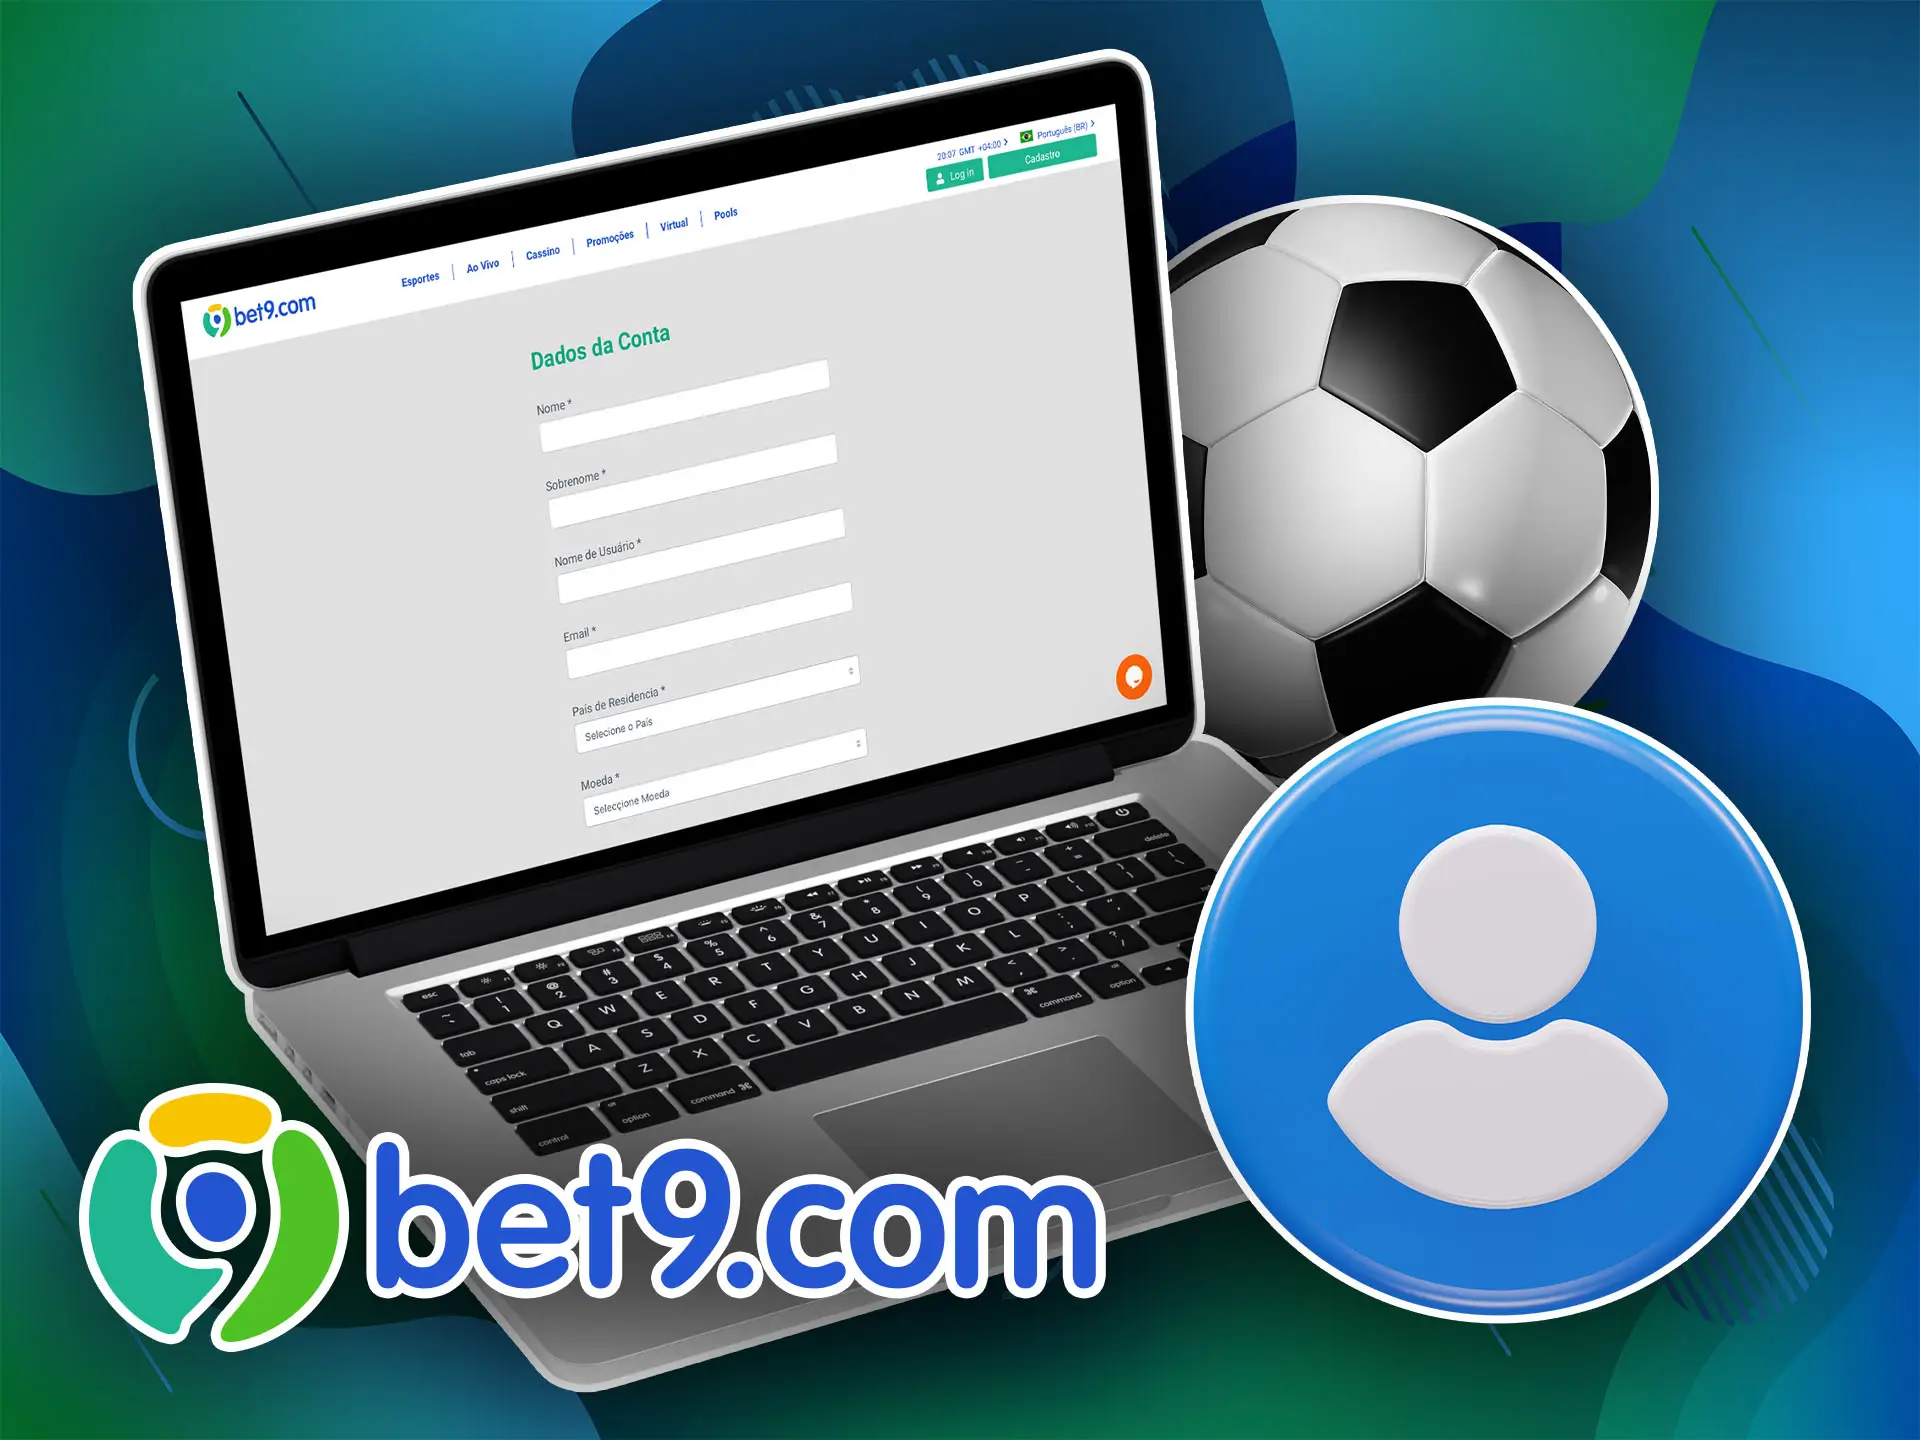 Crie uma conta no Bet9, recarregue seu saldo e aposte no seu time de futebol favorito.